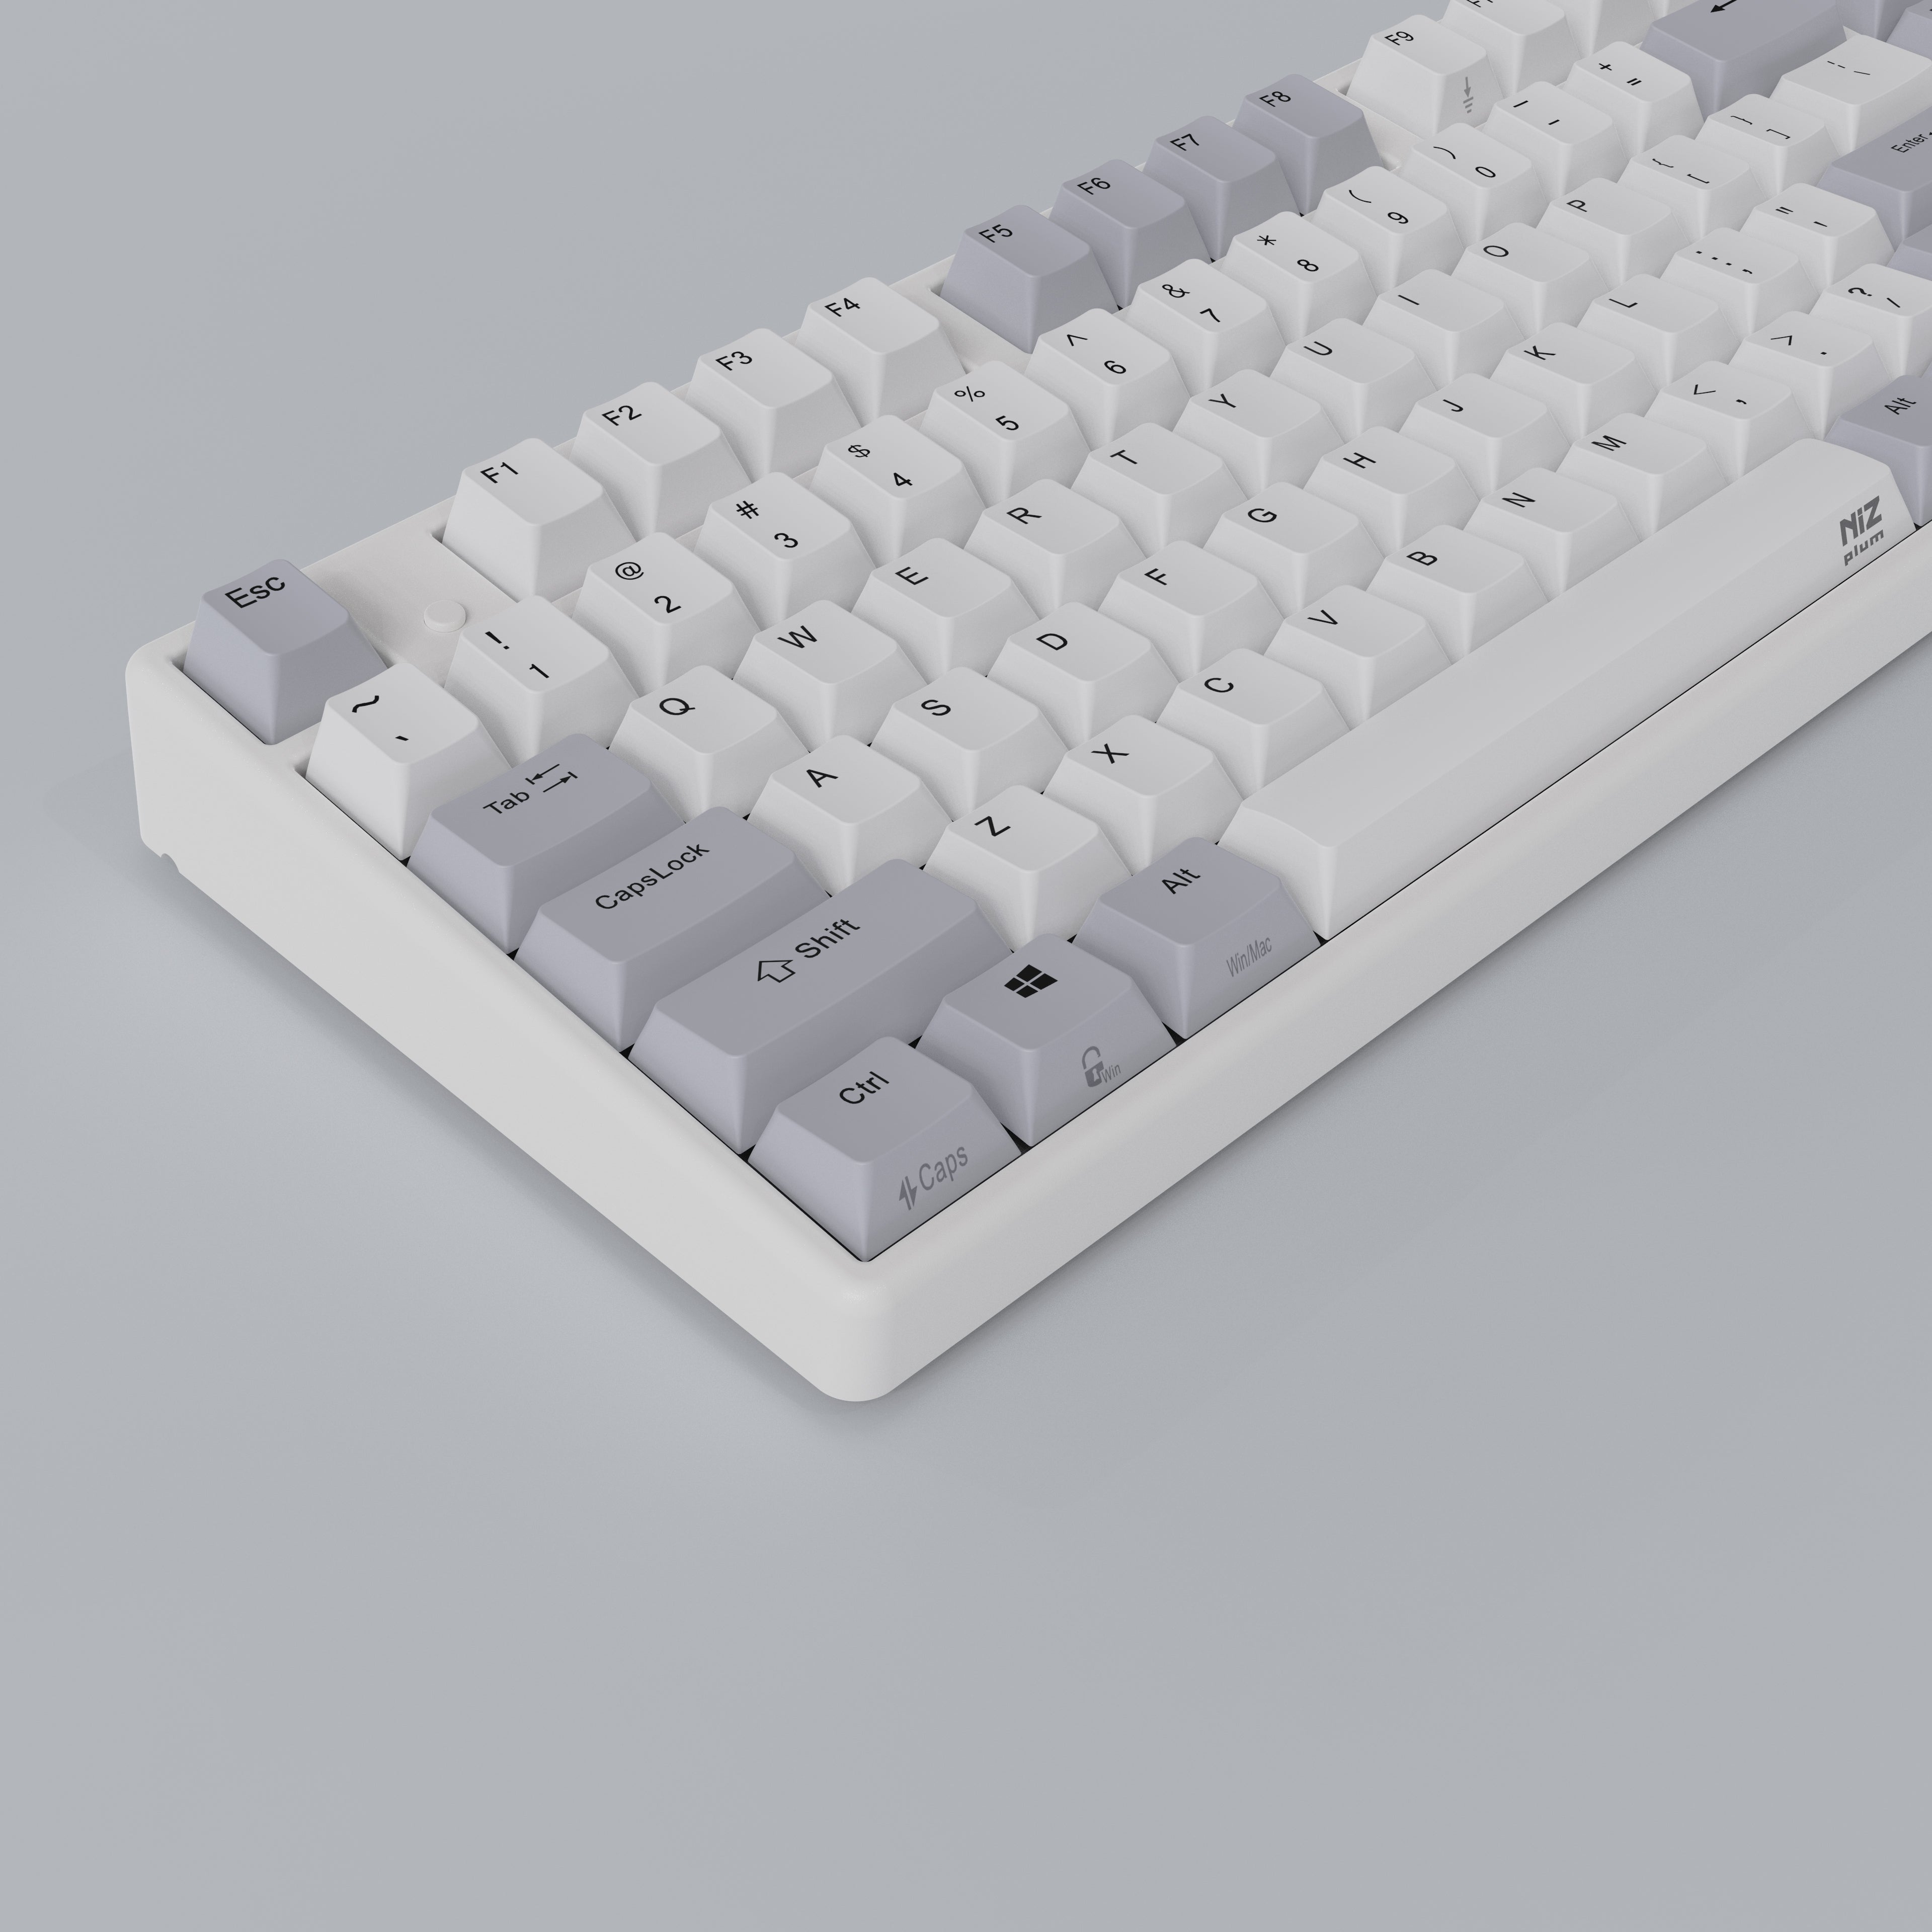 NIZ Keyboard